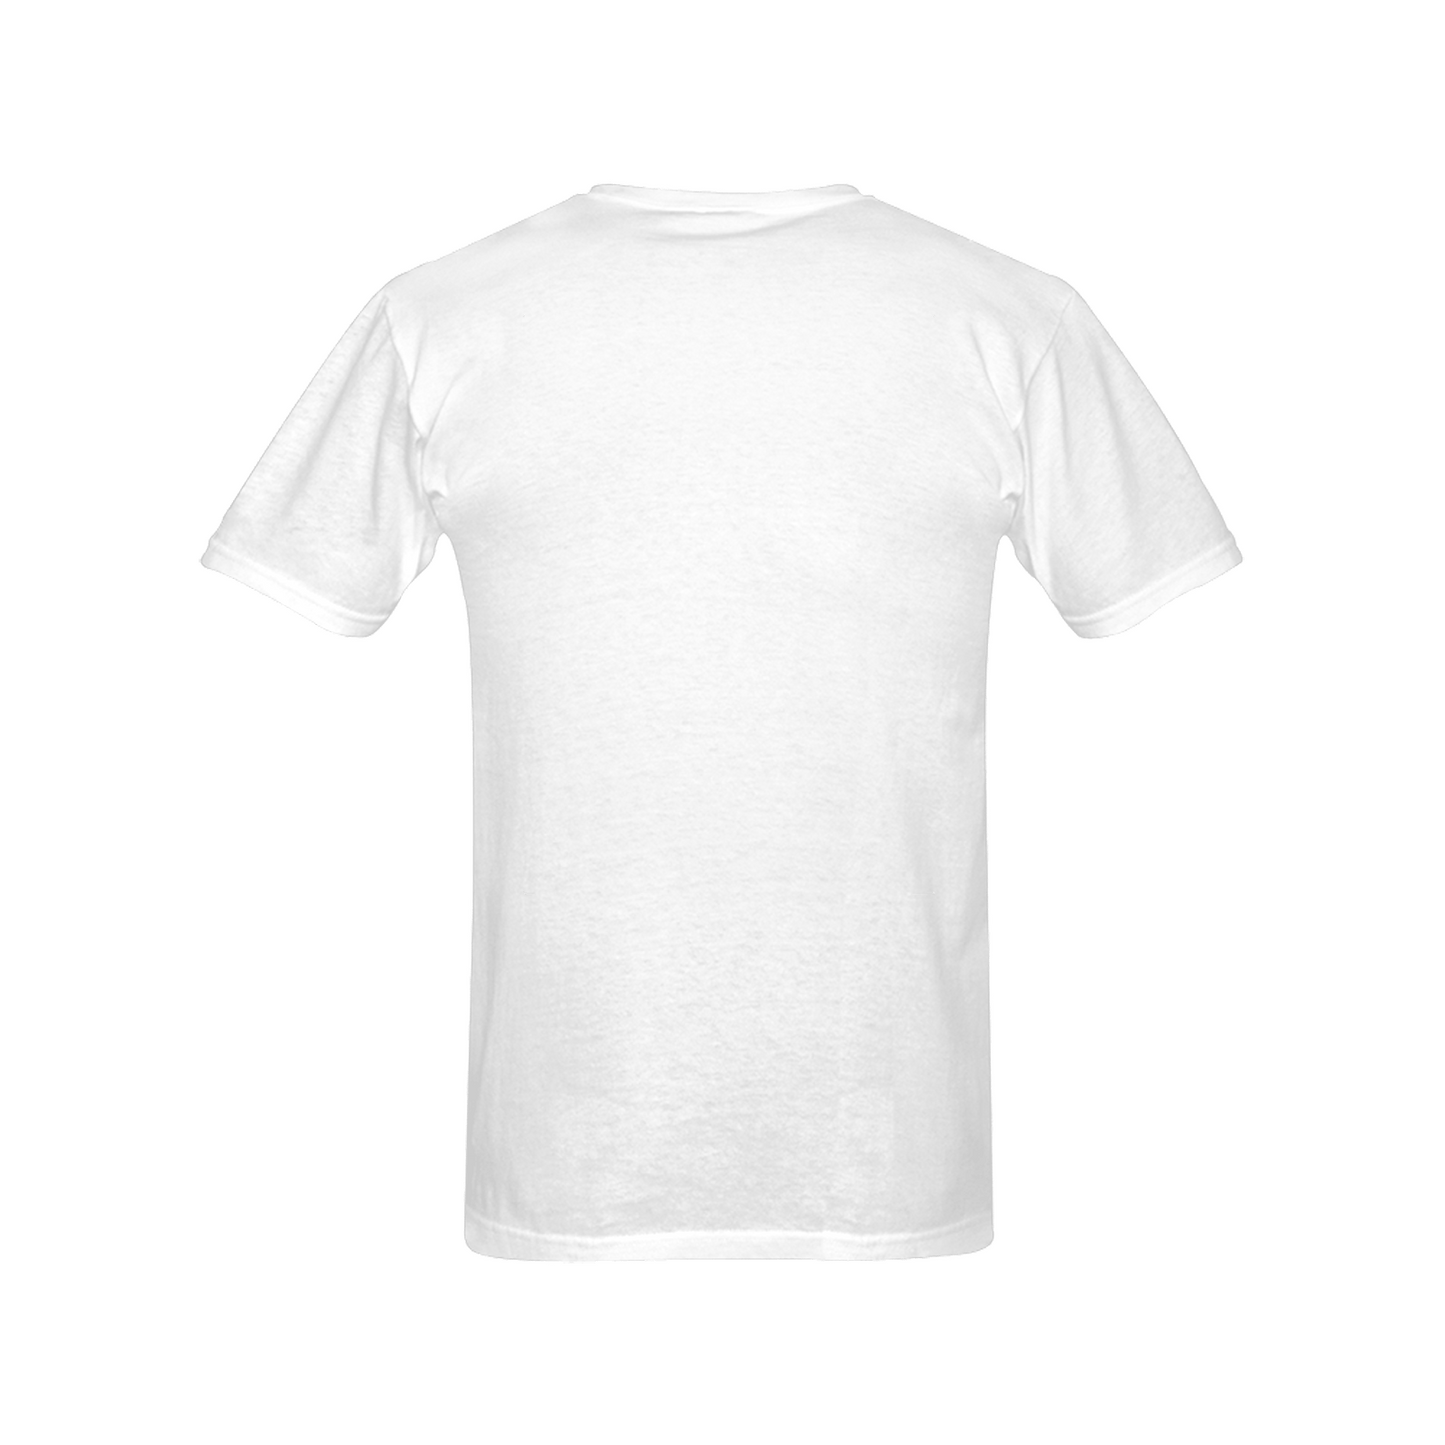 PIT LANE CLOTHING 100% Cotton T- Shirt